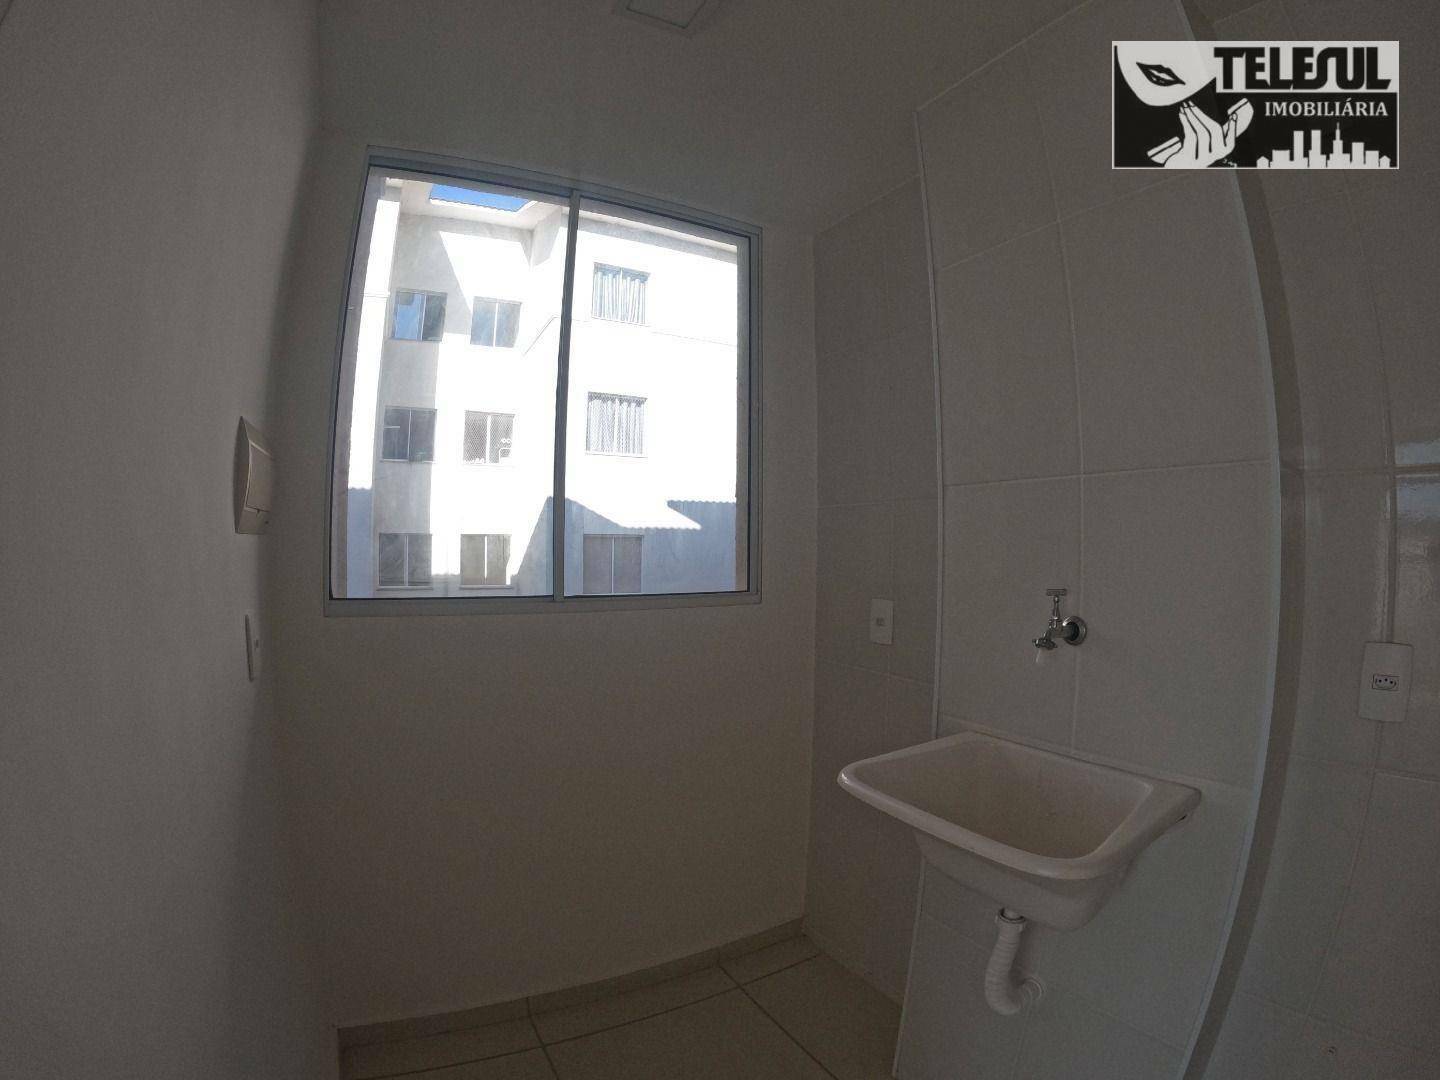 Apartamento, 2 quartos, 313 m² - Foto 4